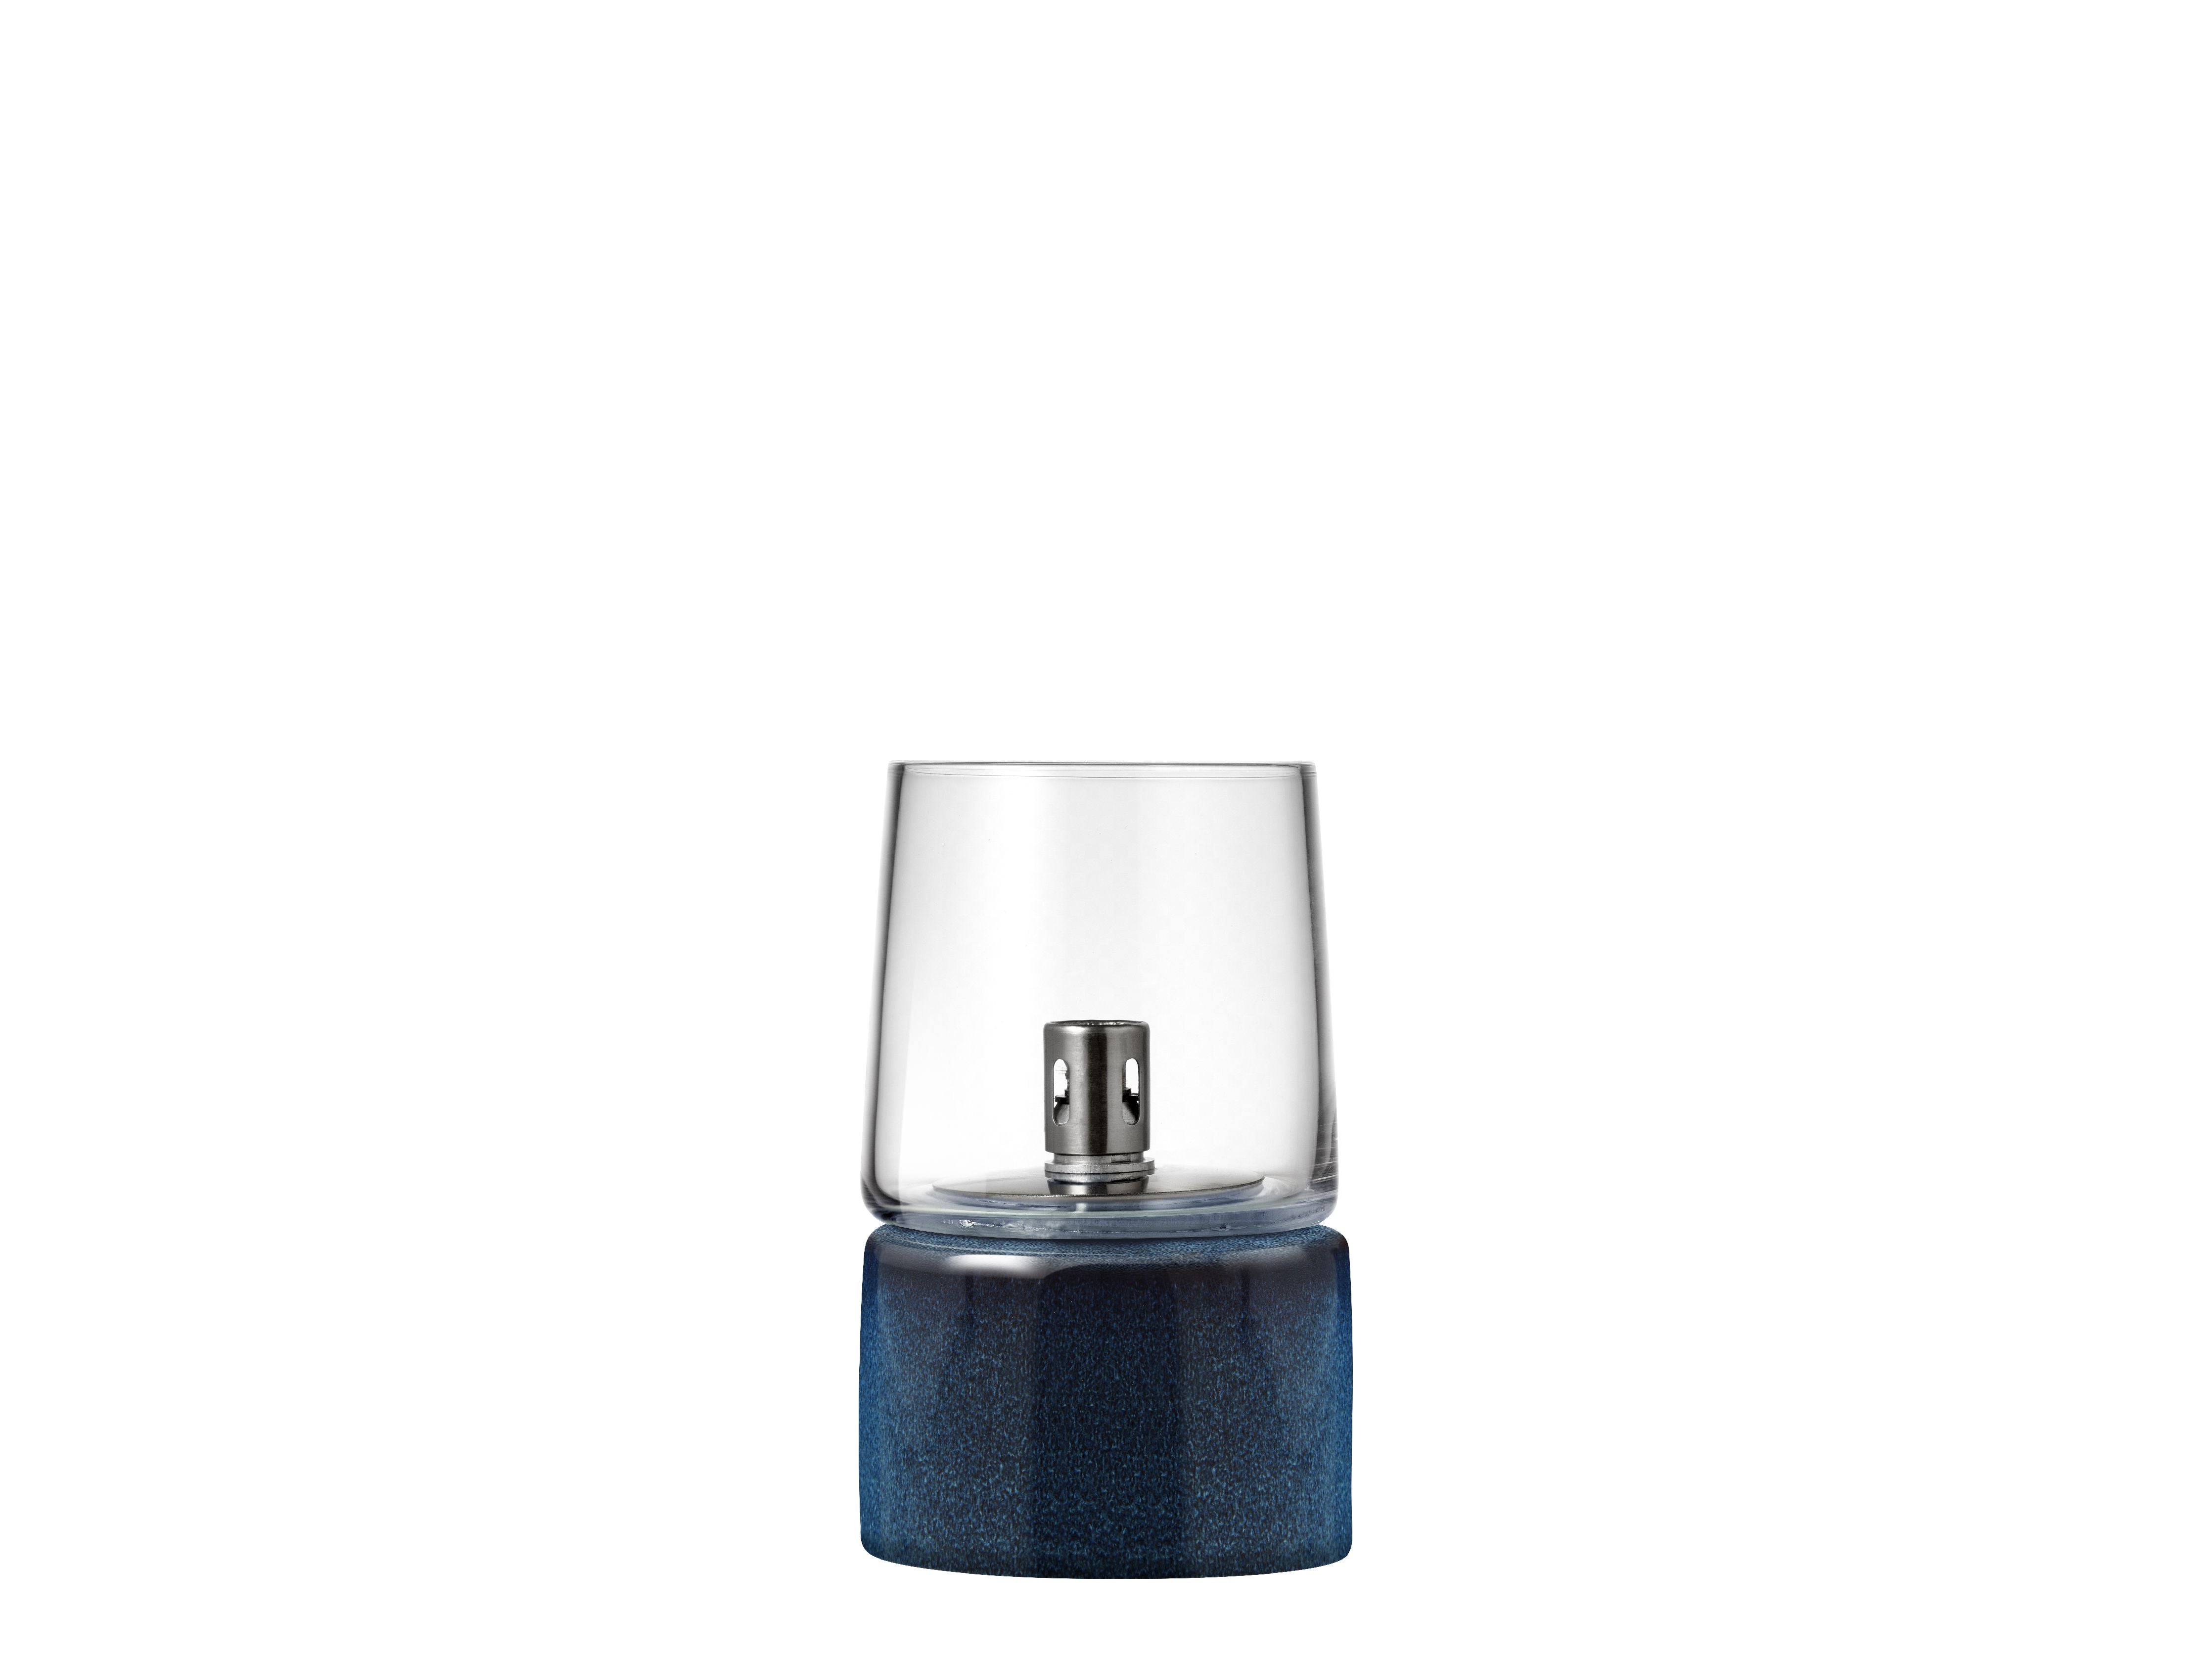 Bitz Gastroolie lampe øx h 8,5x14 cm, blå